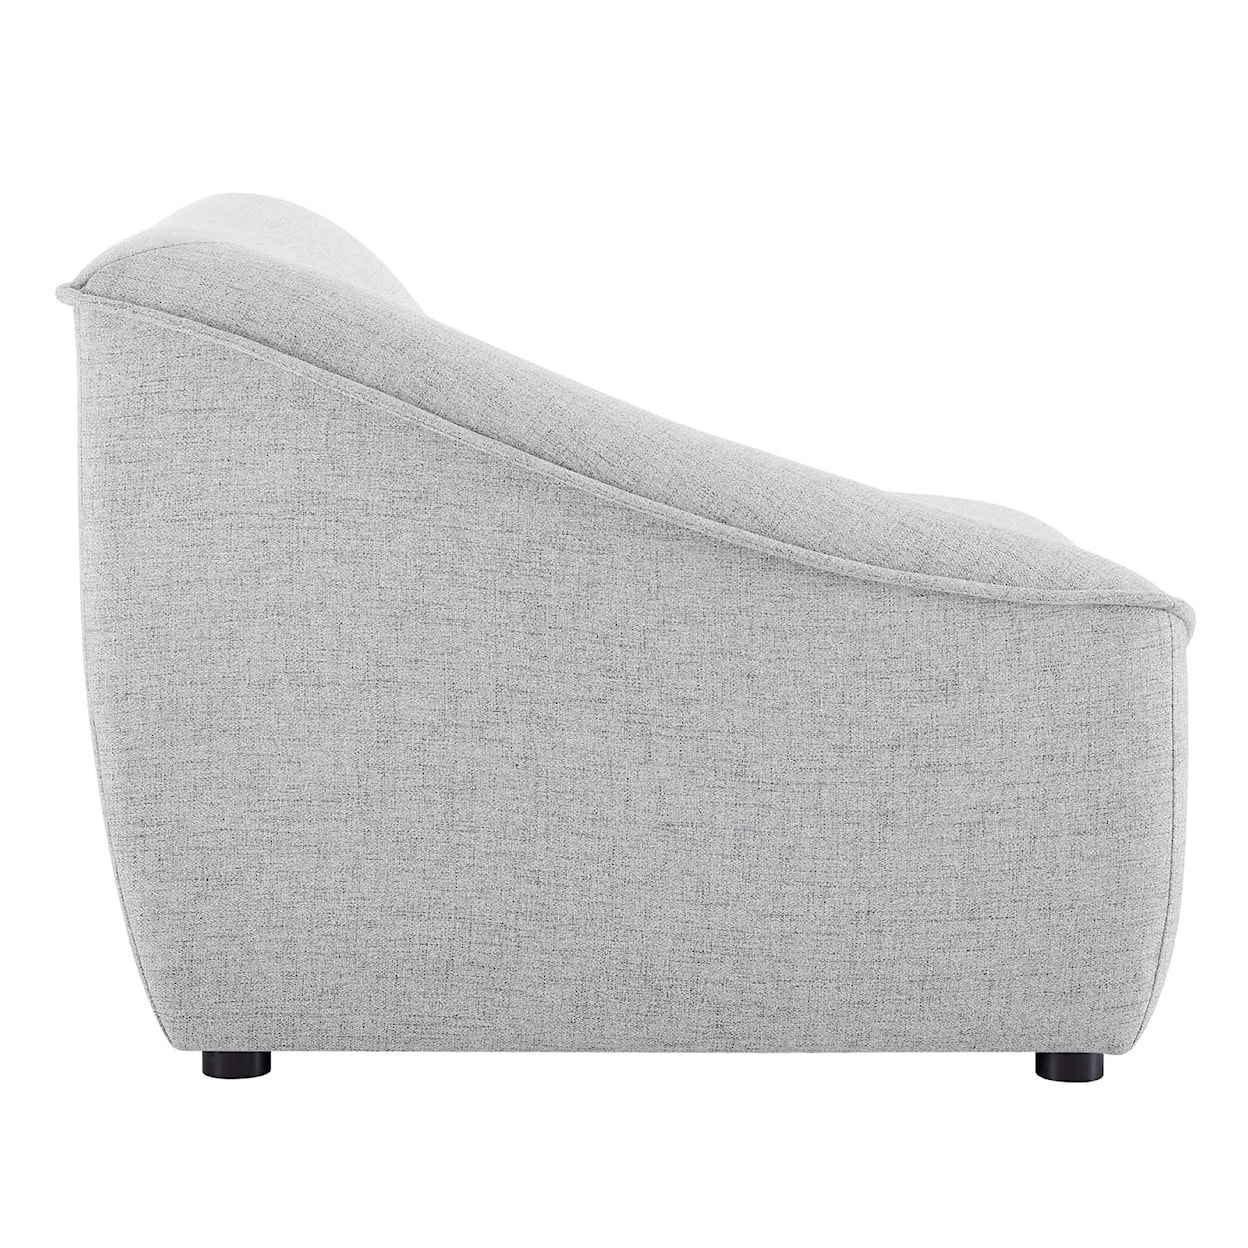 Modway Comprise 4-Piece Sofa